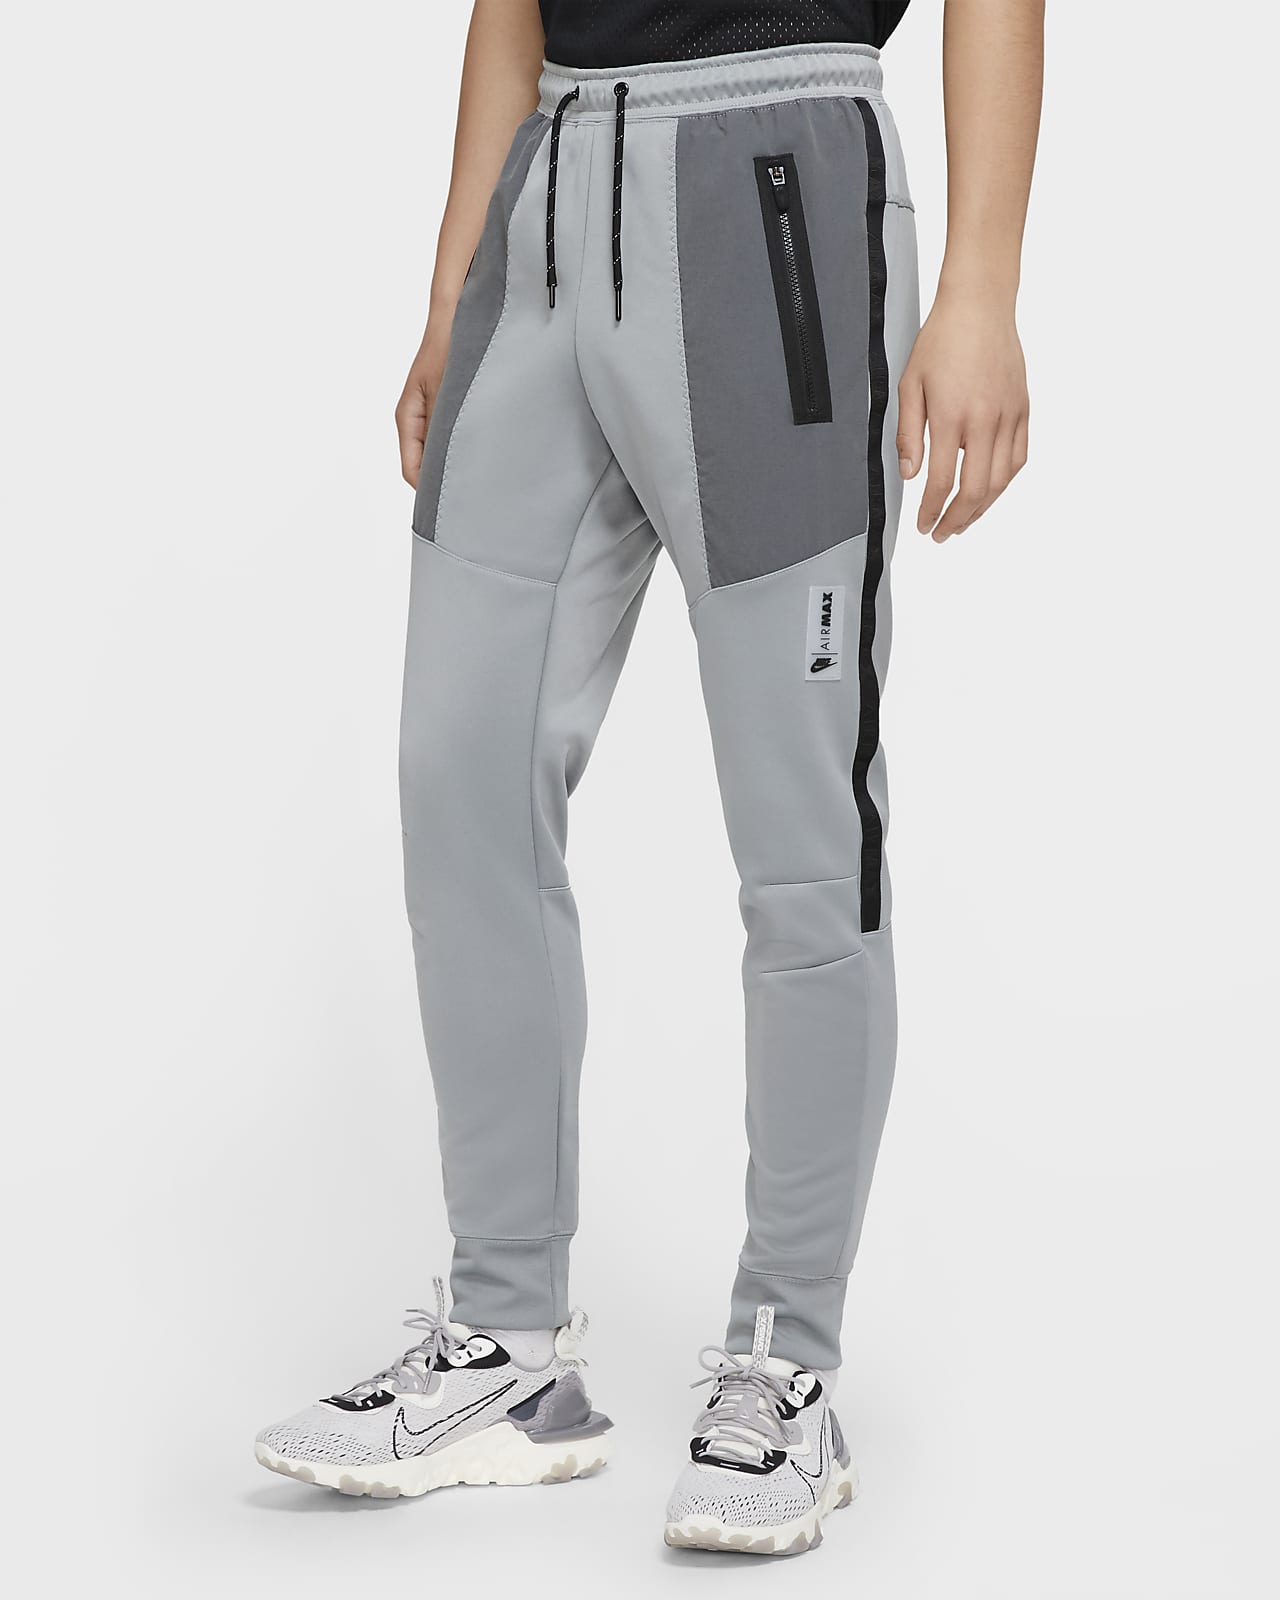 Nike Sportswear Air Max Men's Trousers. Nike ZA